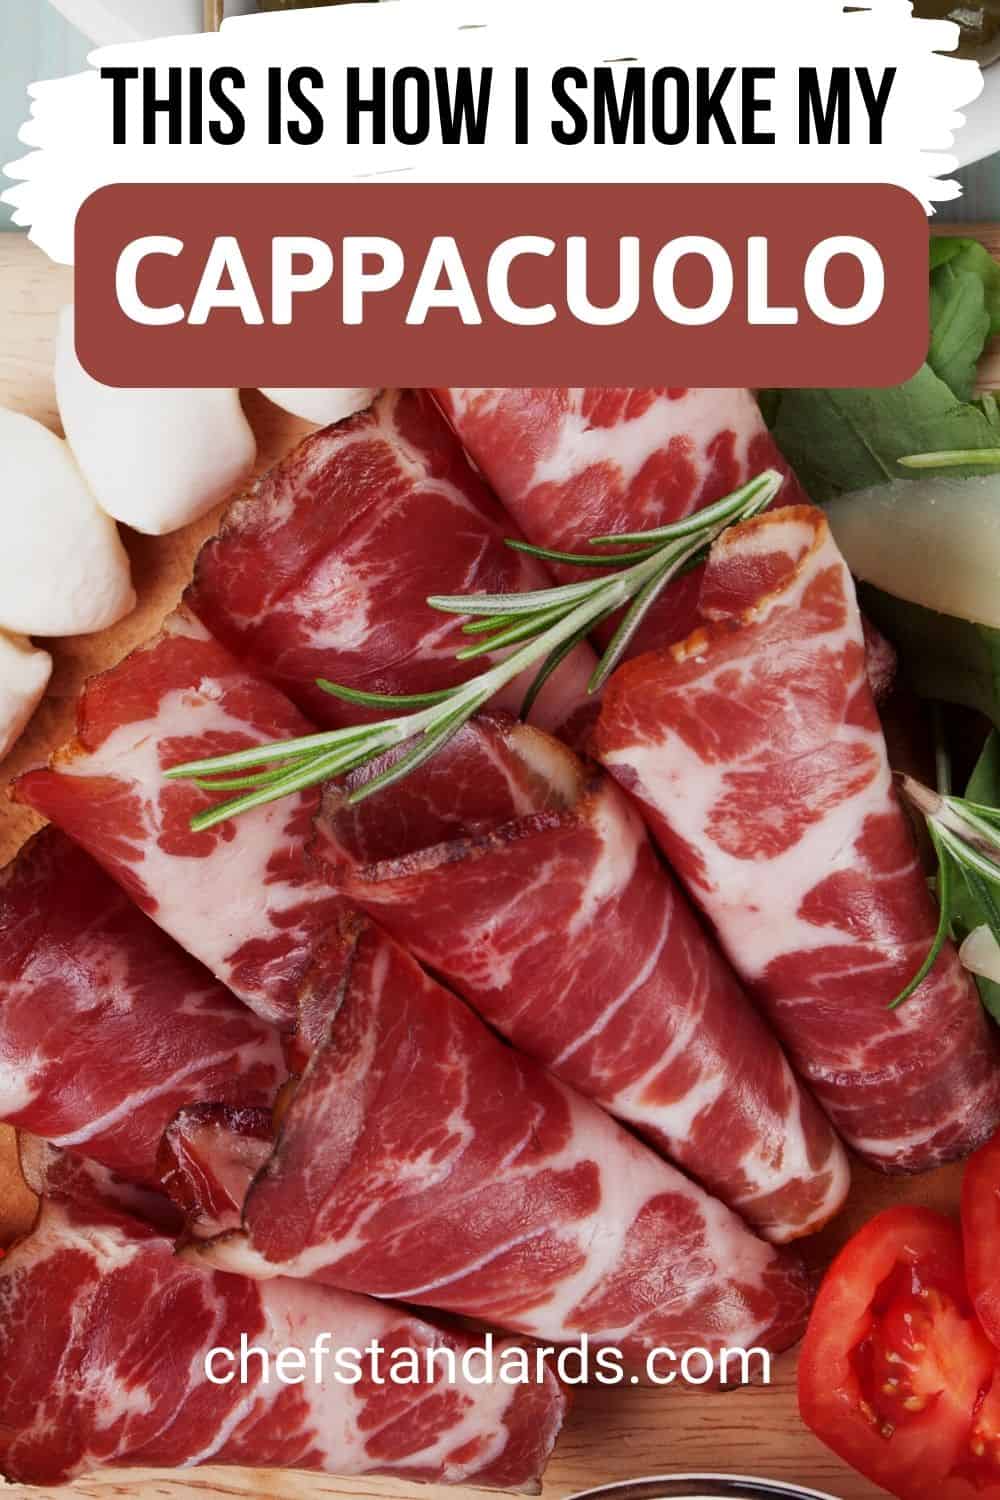 Capocollo, Capicola, Or Cappacuolo Meat Basics + Recipe